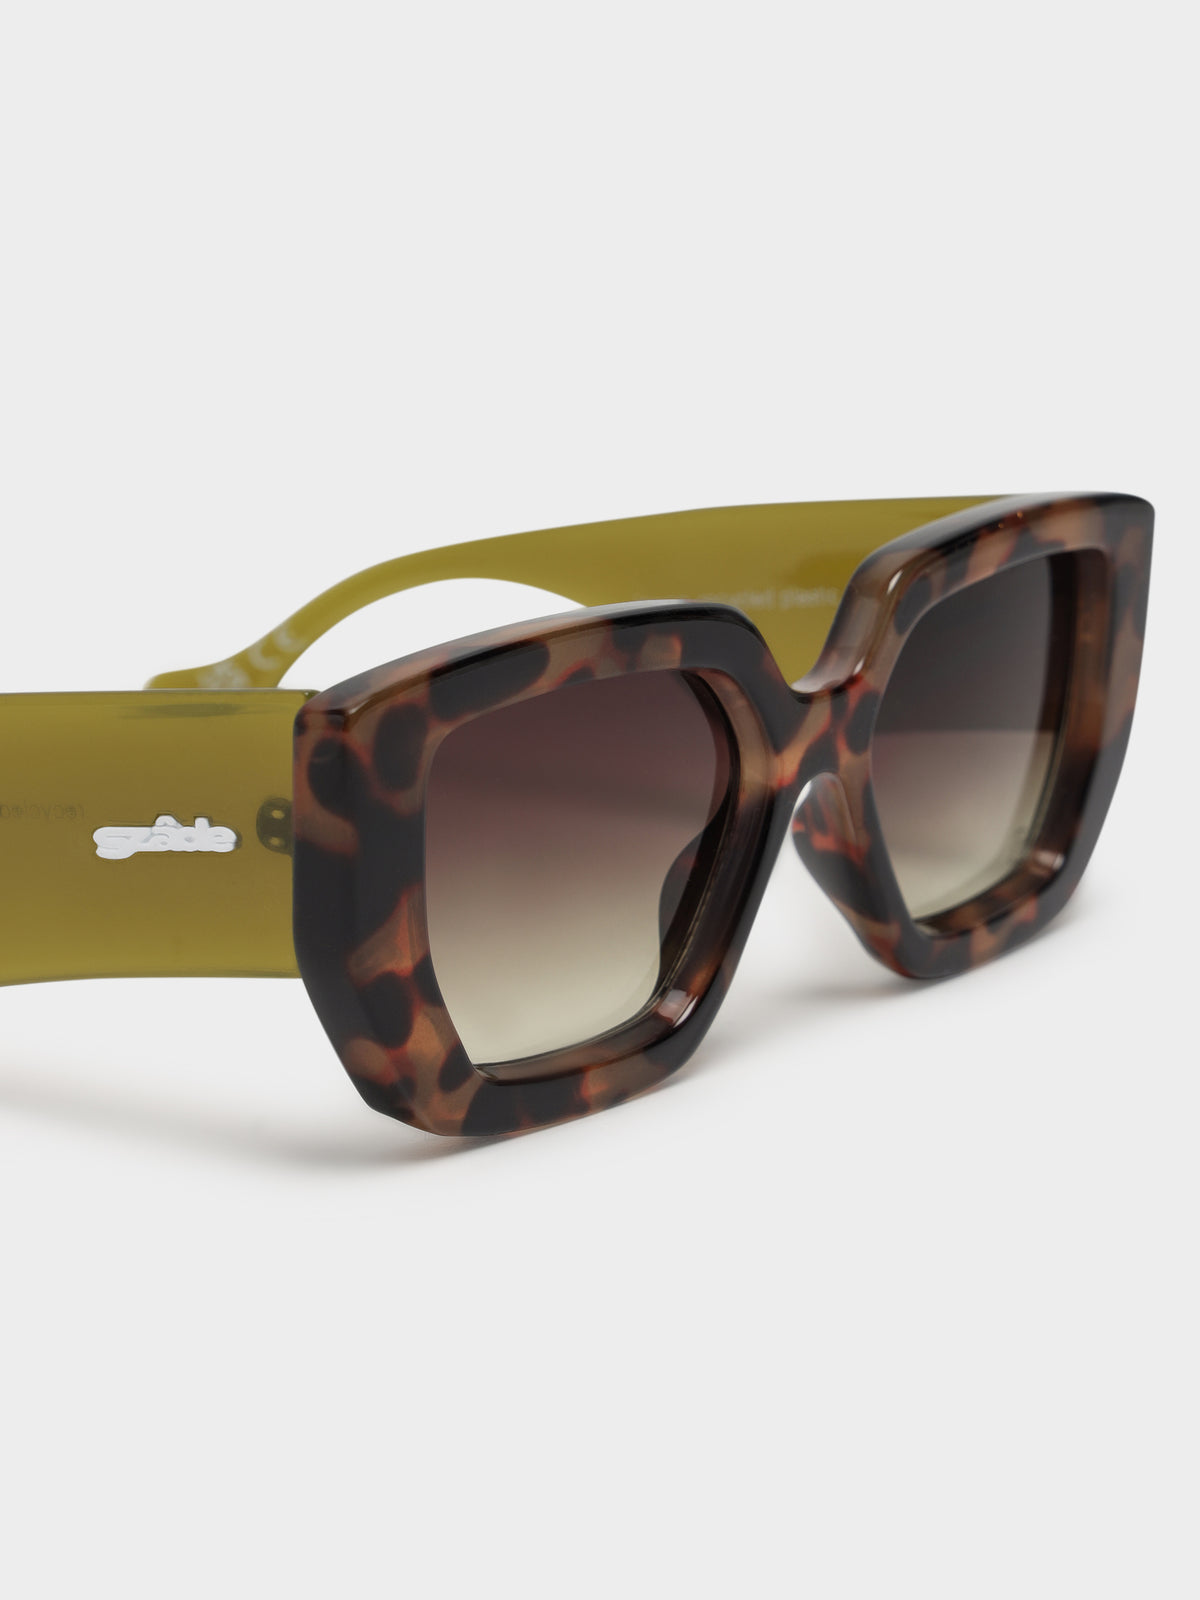 Lowen Sunglasses in Pinta Tortoise